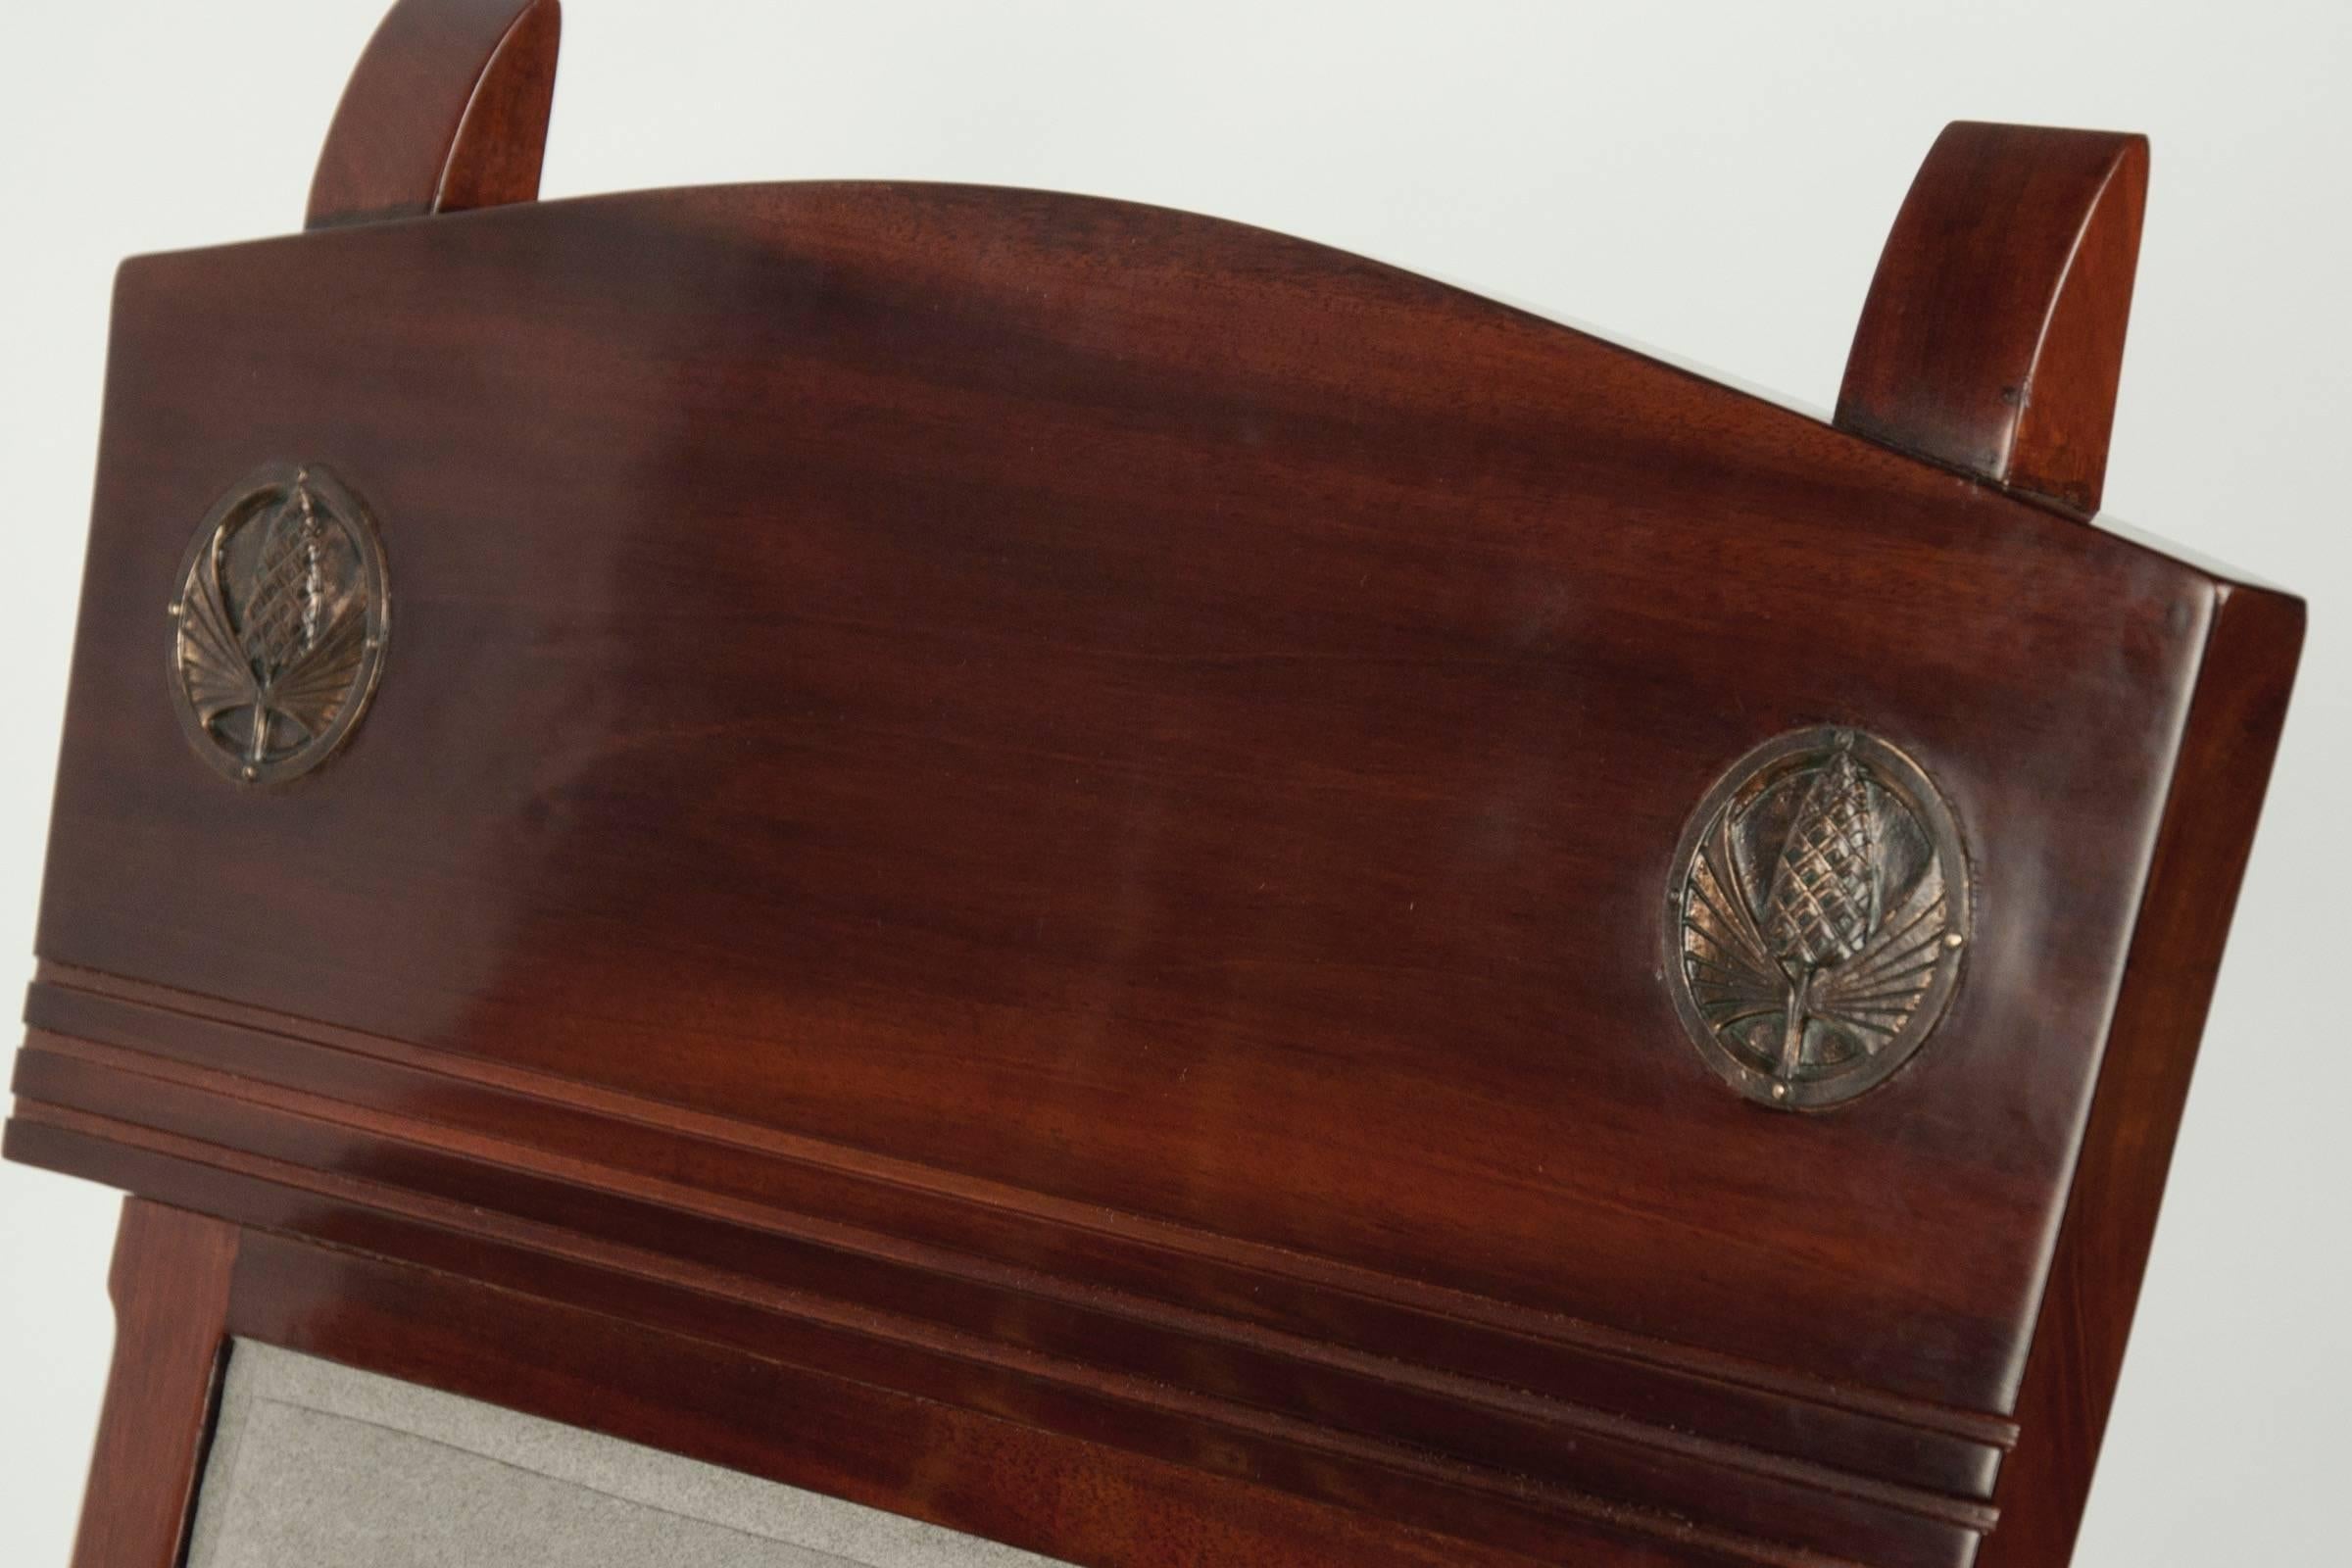 Cadre bas et incurvé en noyer, sculpté de rainures droites le long du dos et incrusté de deux plaques en bronze décorées d'un motif en forme de pomme de pin. Signé.
  
NOTRE RÉFÉRENCE N6489
 